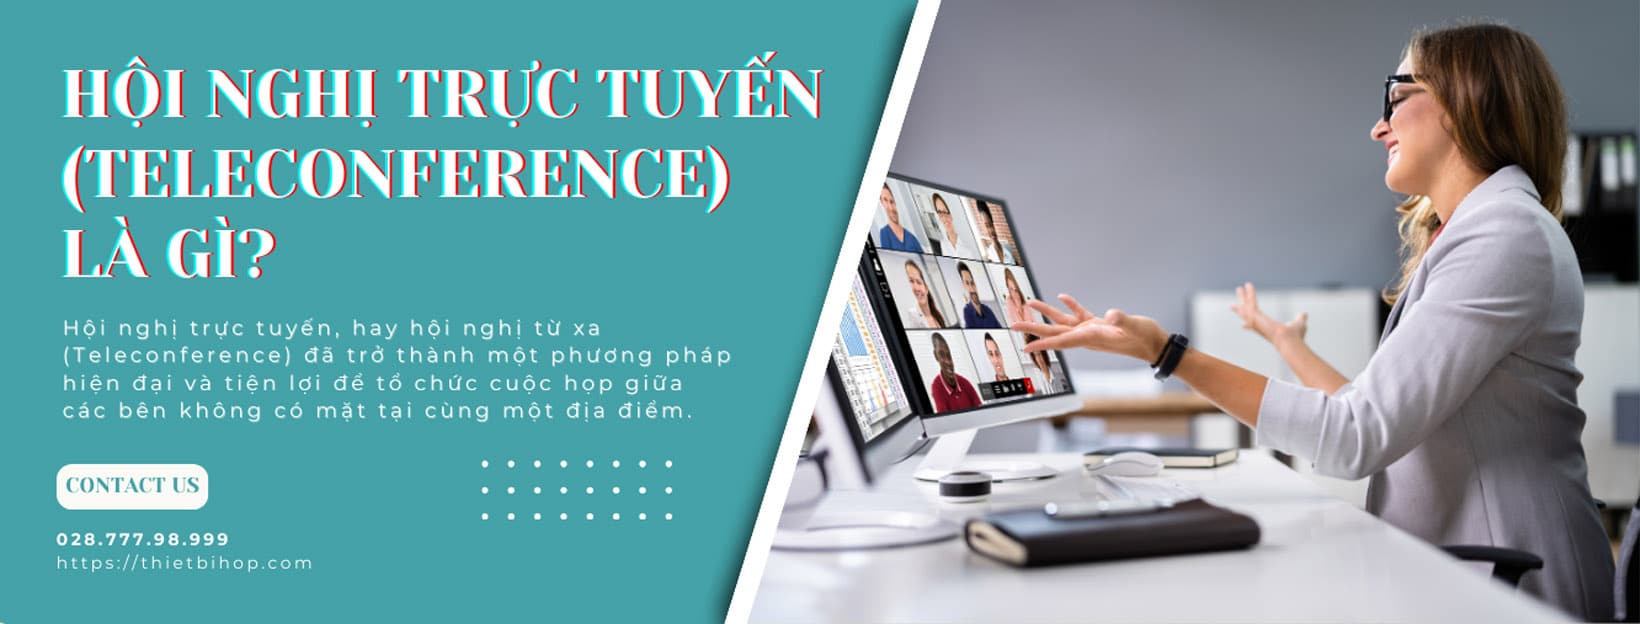 hội nghị trực tuyến teleconference là gì